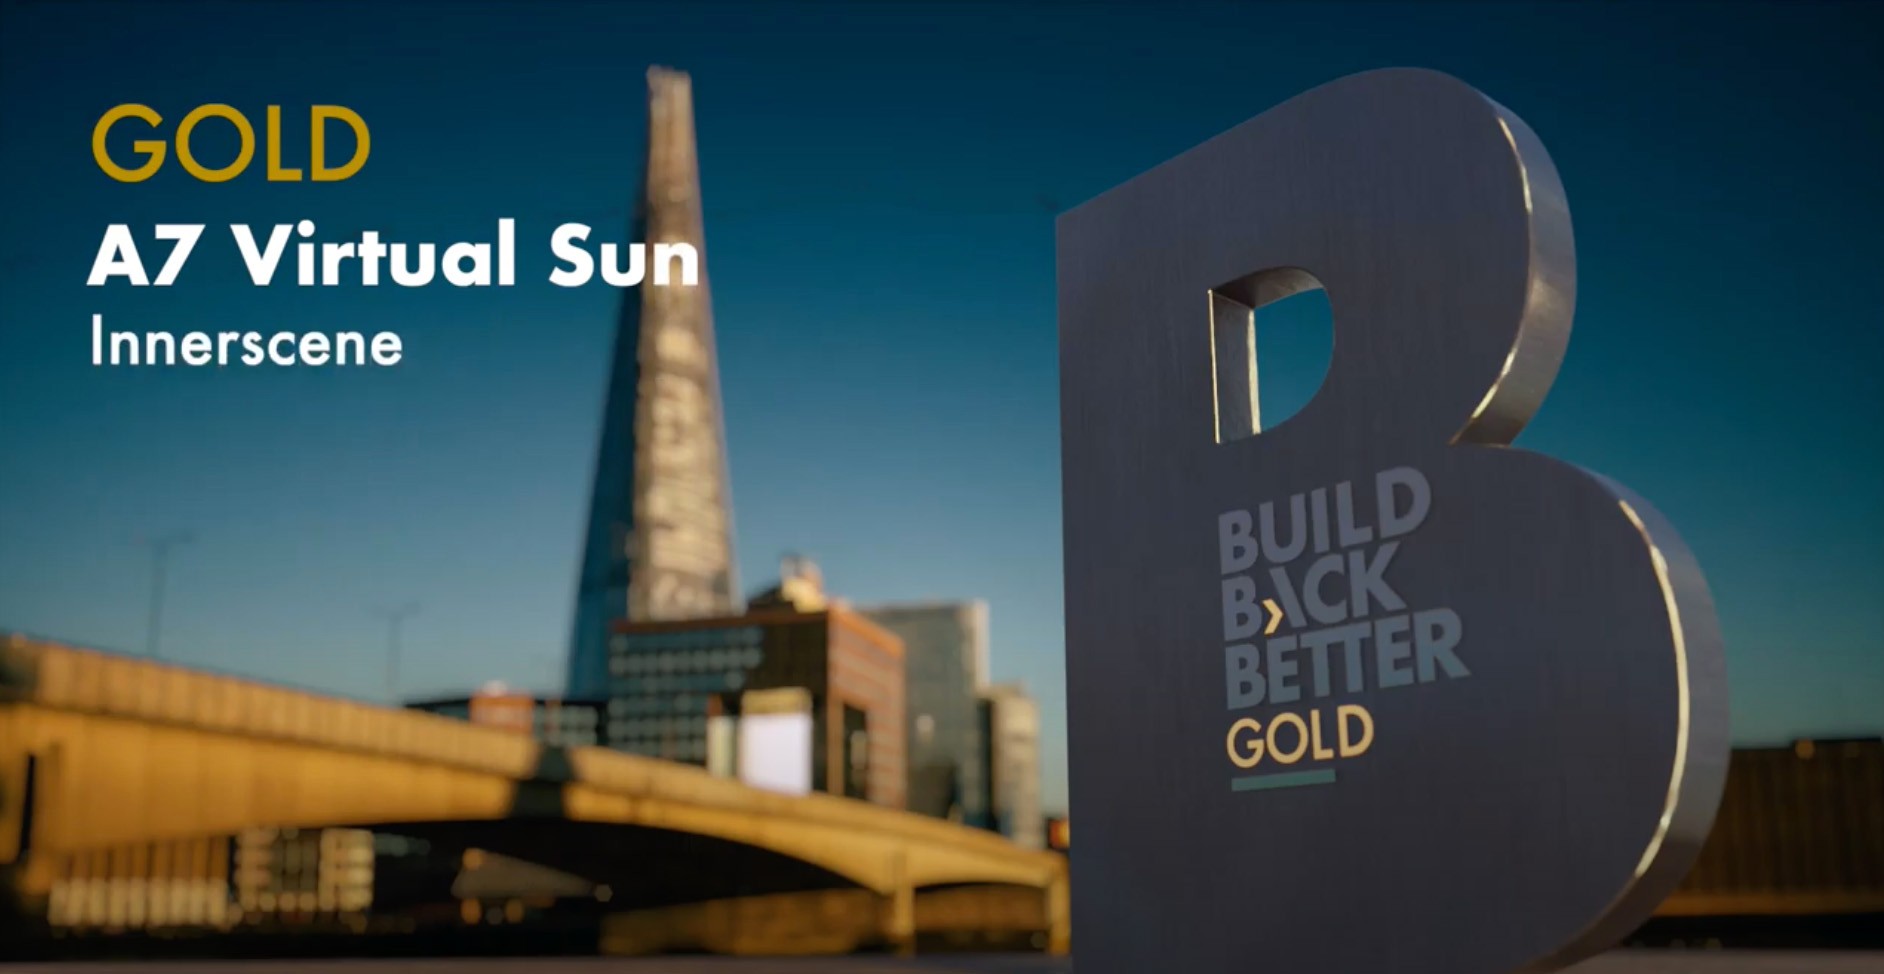 Innerscene A7 Virtual Sun Build Back Better Gold award promo shot